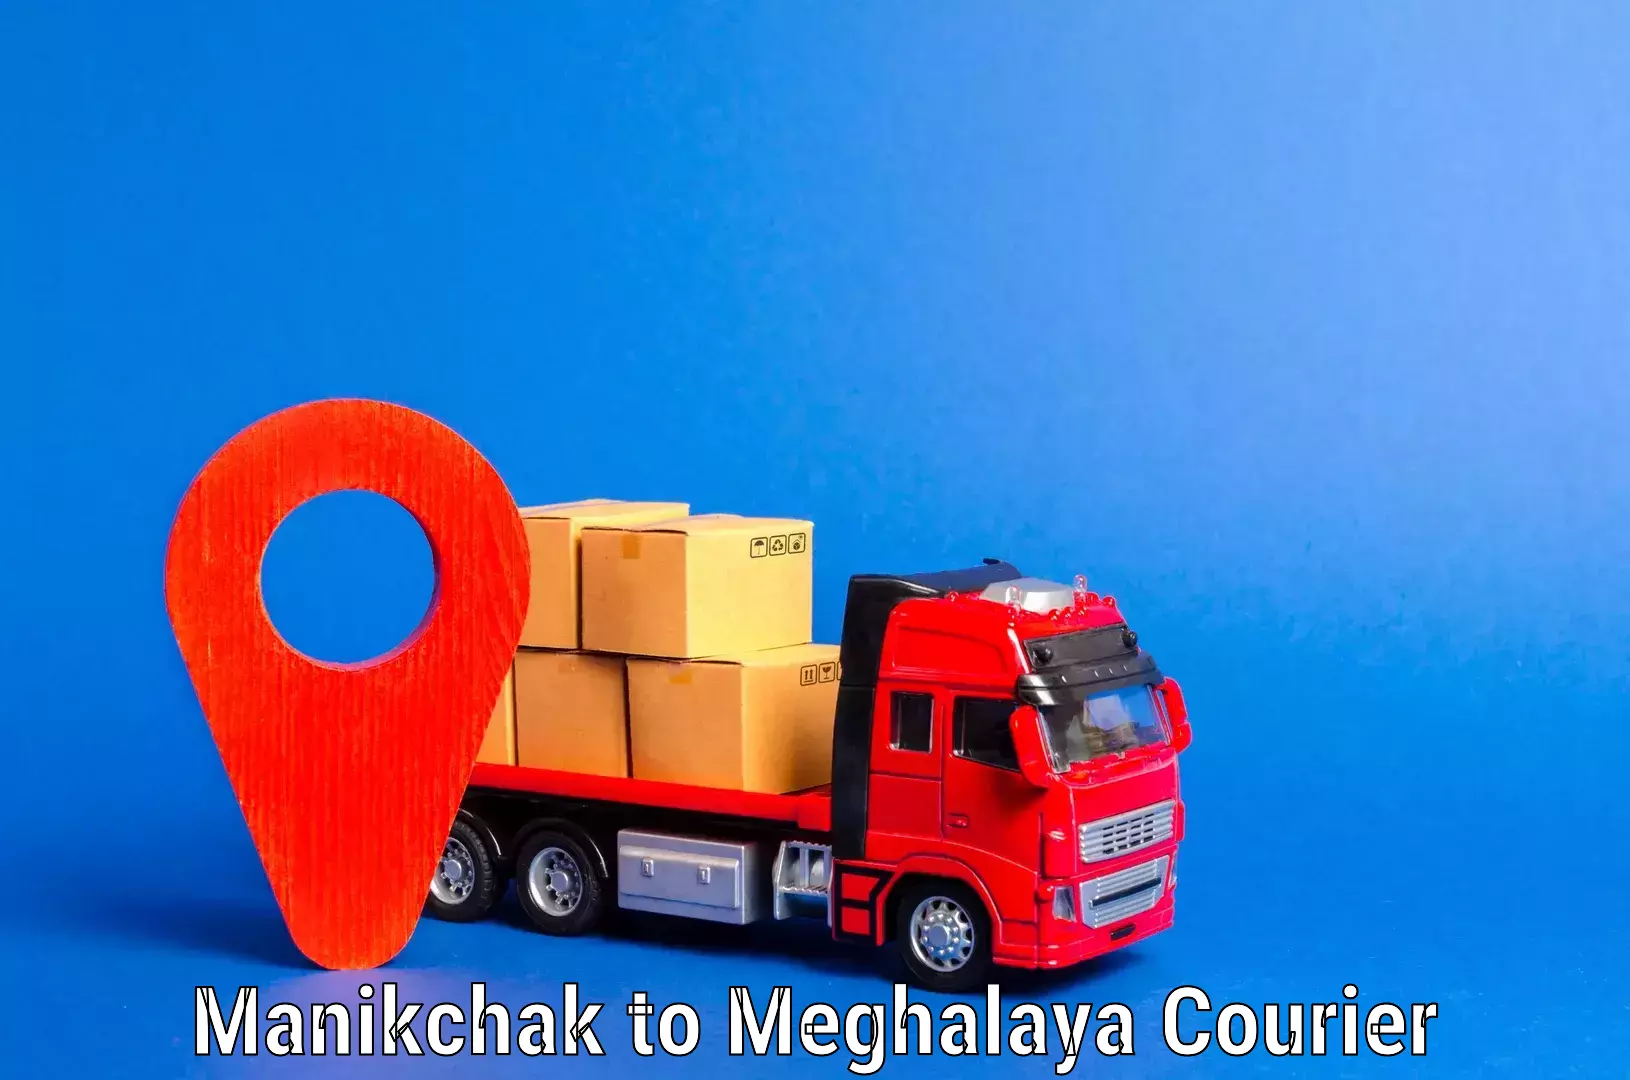 Budget-friendly movers Manikchak to Meghalaya